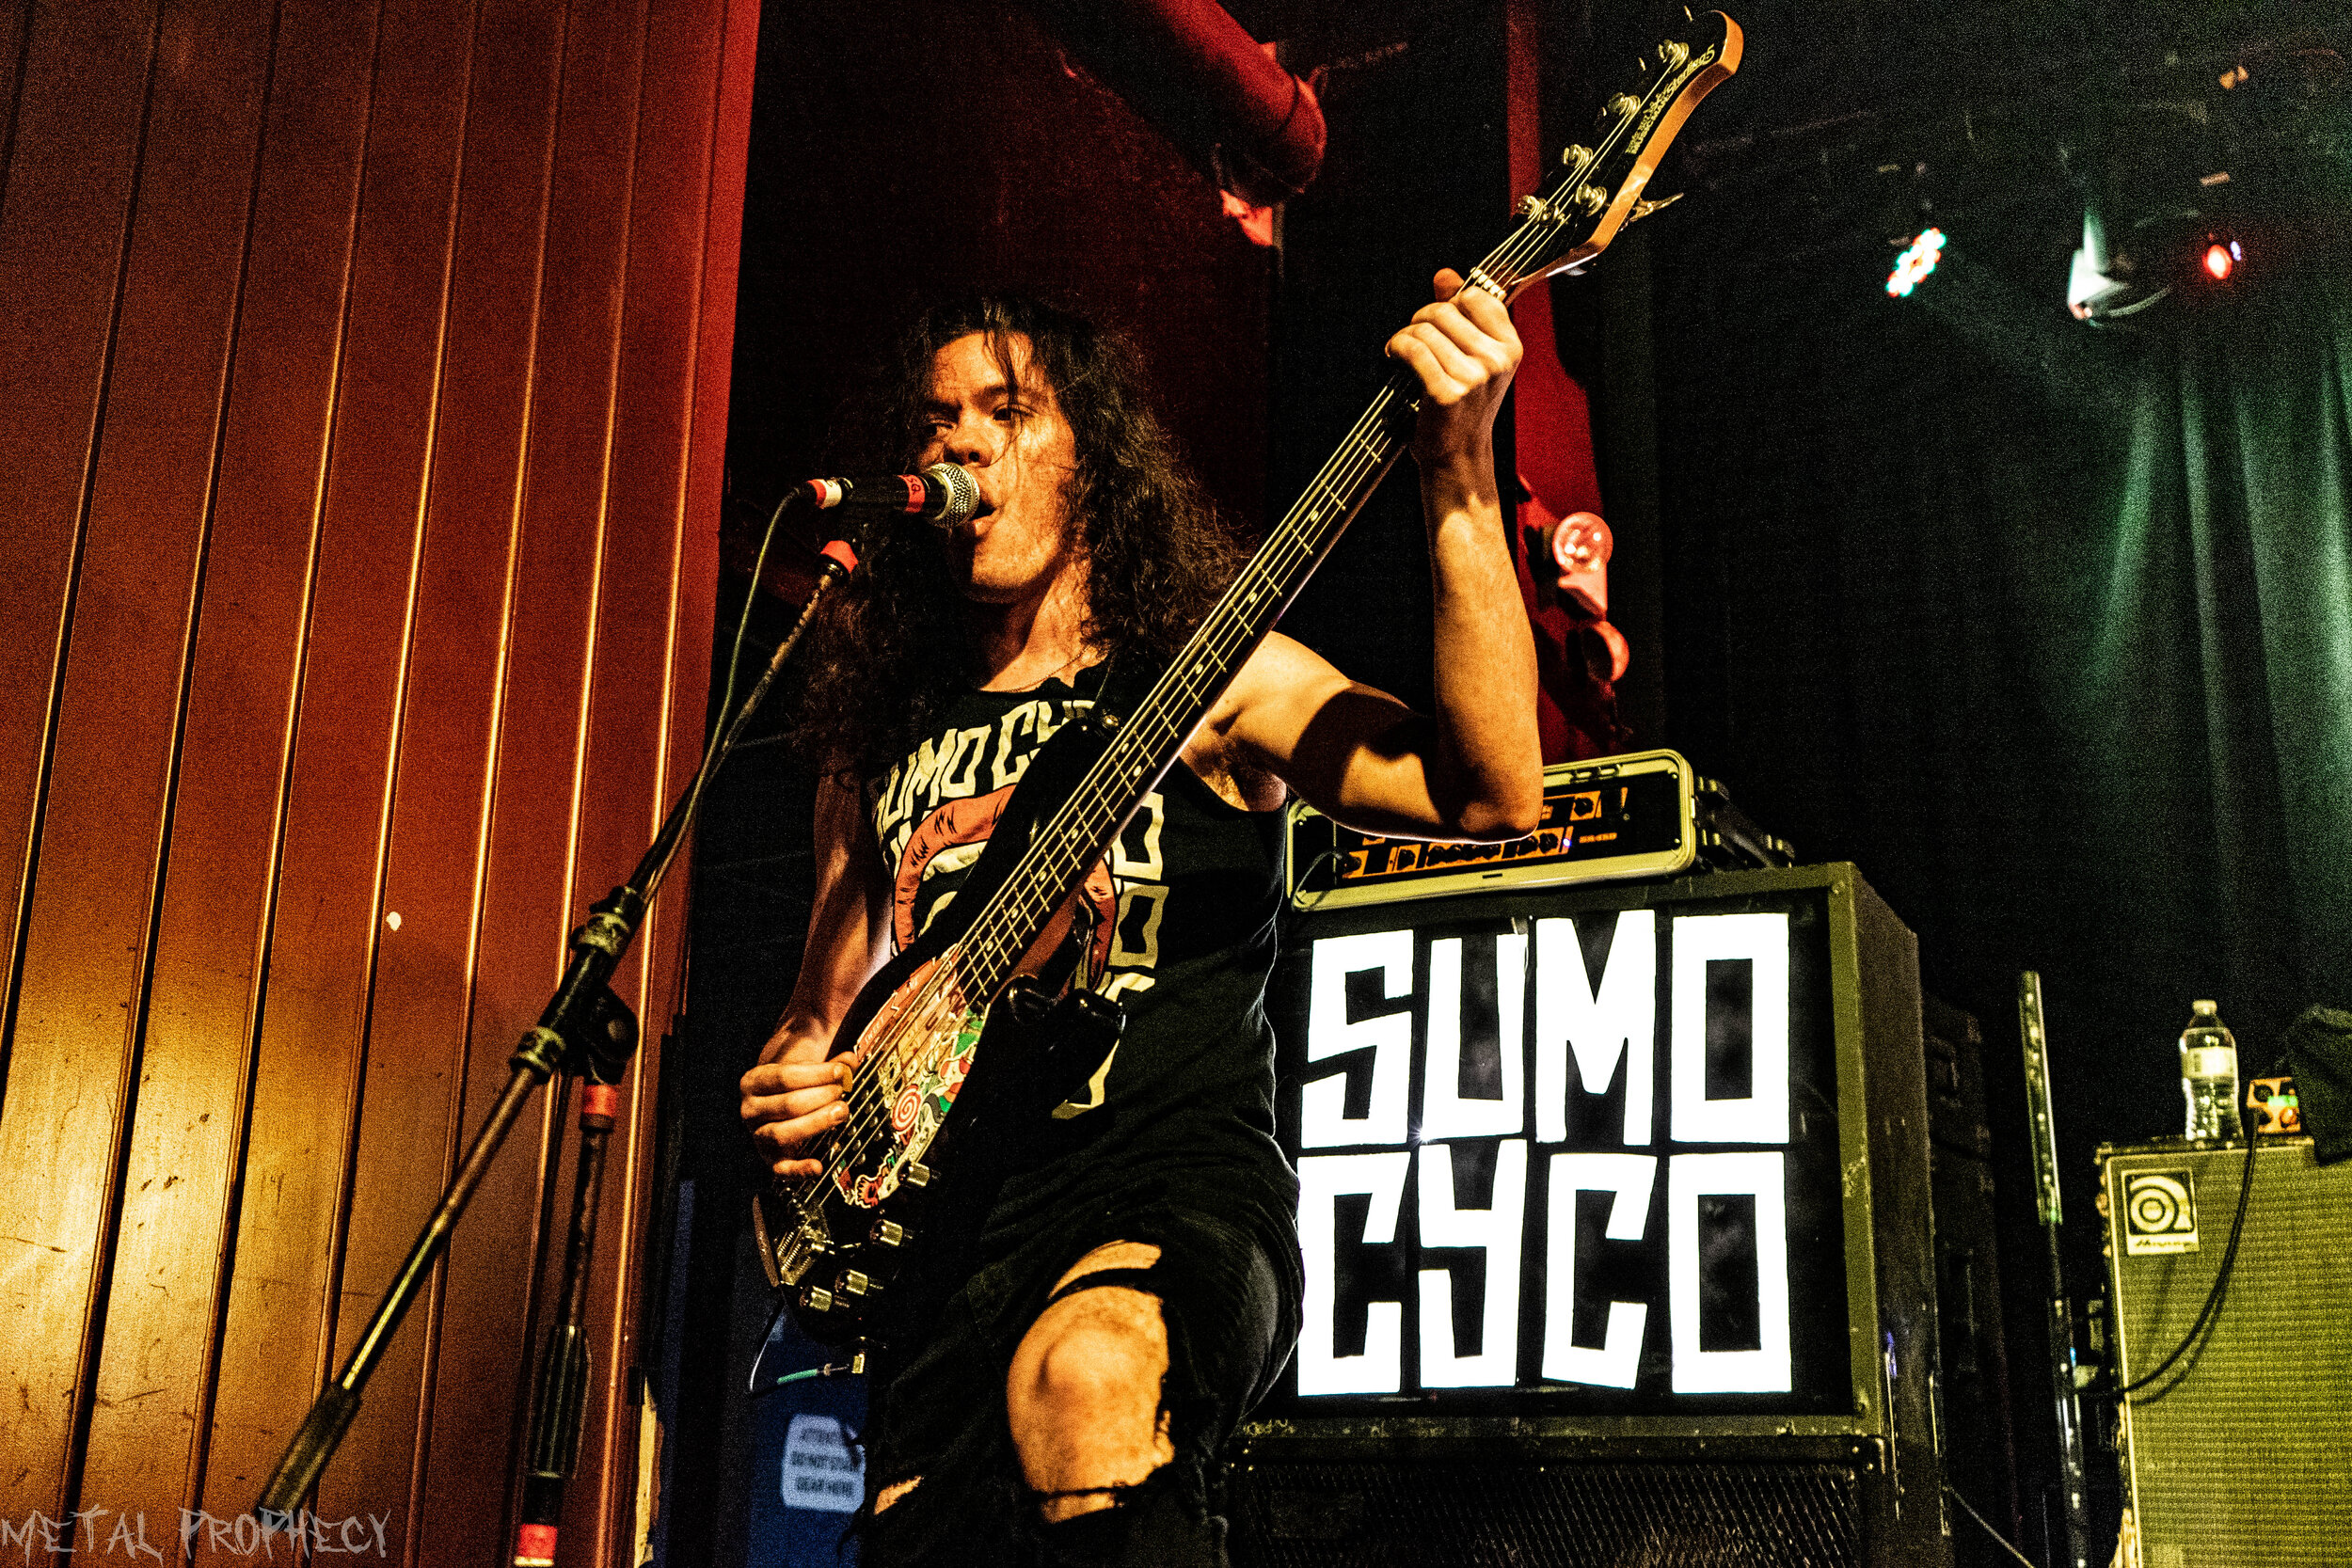 Sumo Cyco at The Masquerade (Hell)